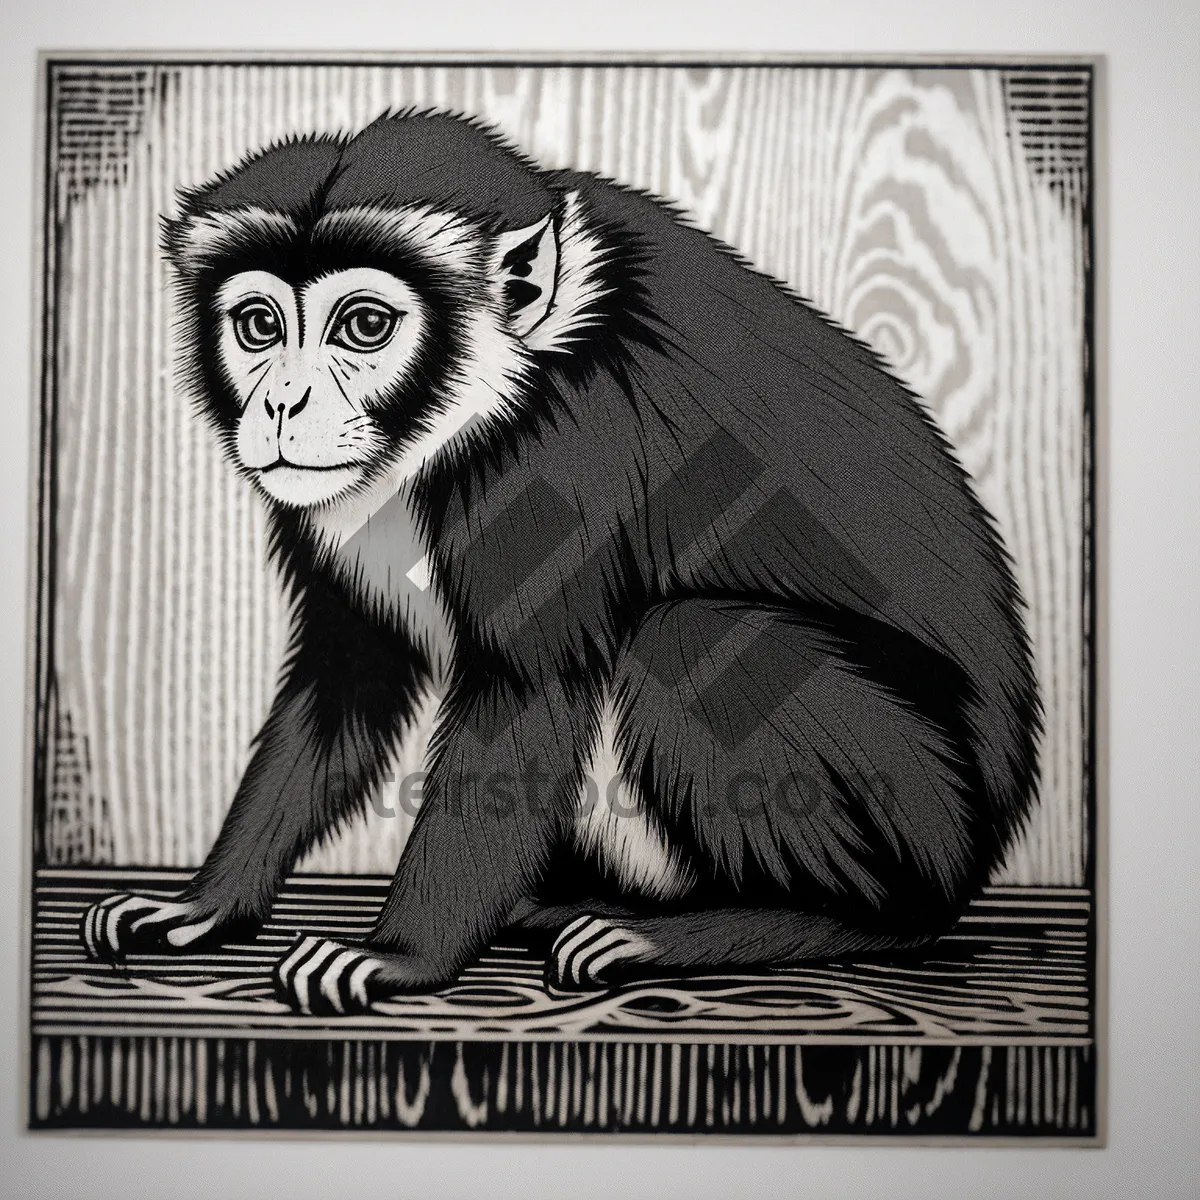 Picture of Monkey Primate Statue Sculpture – Jungle Wisdom in Stone